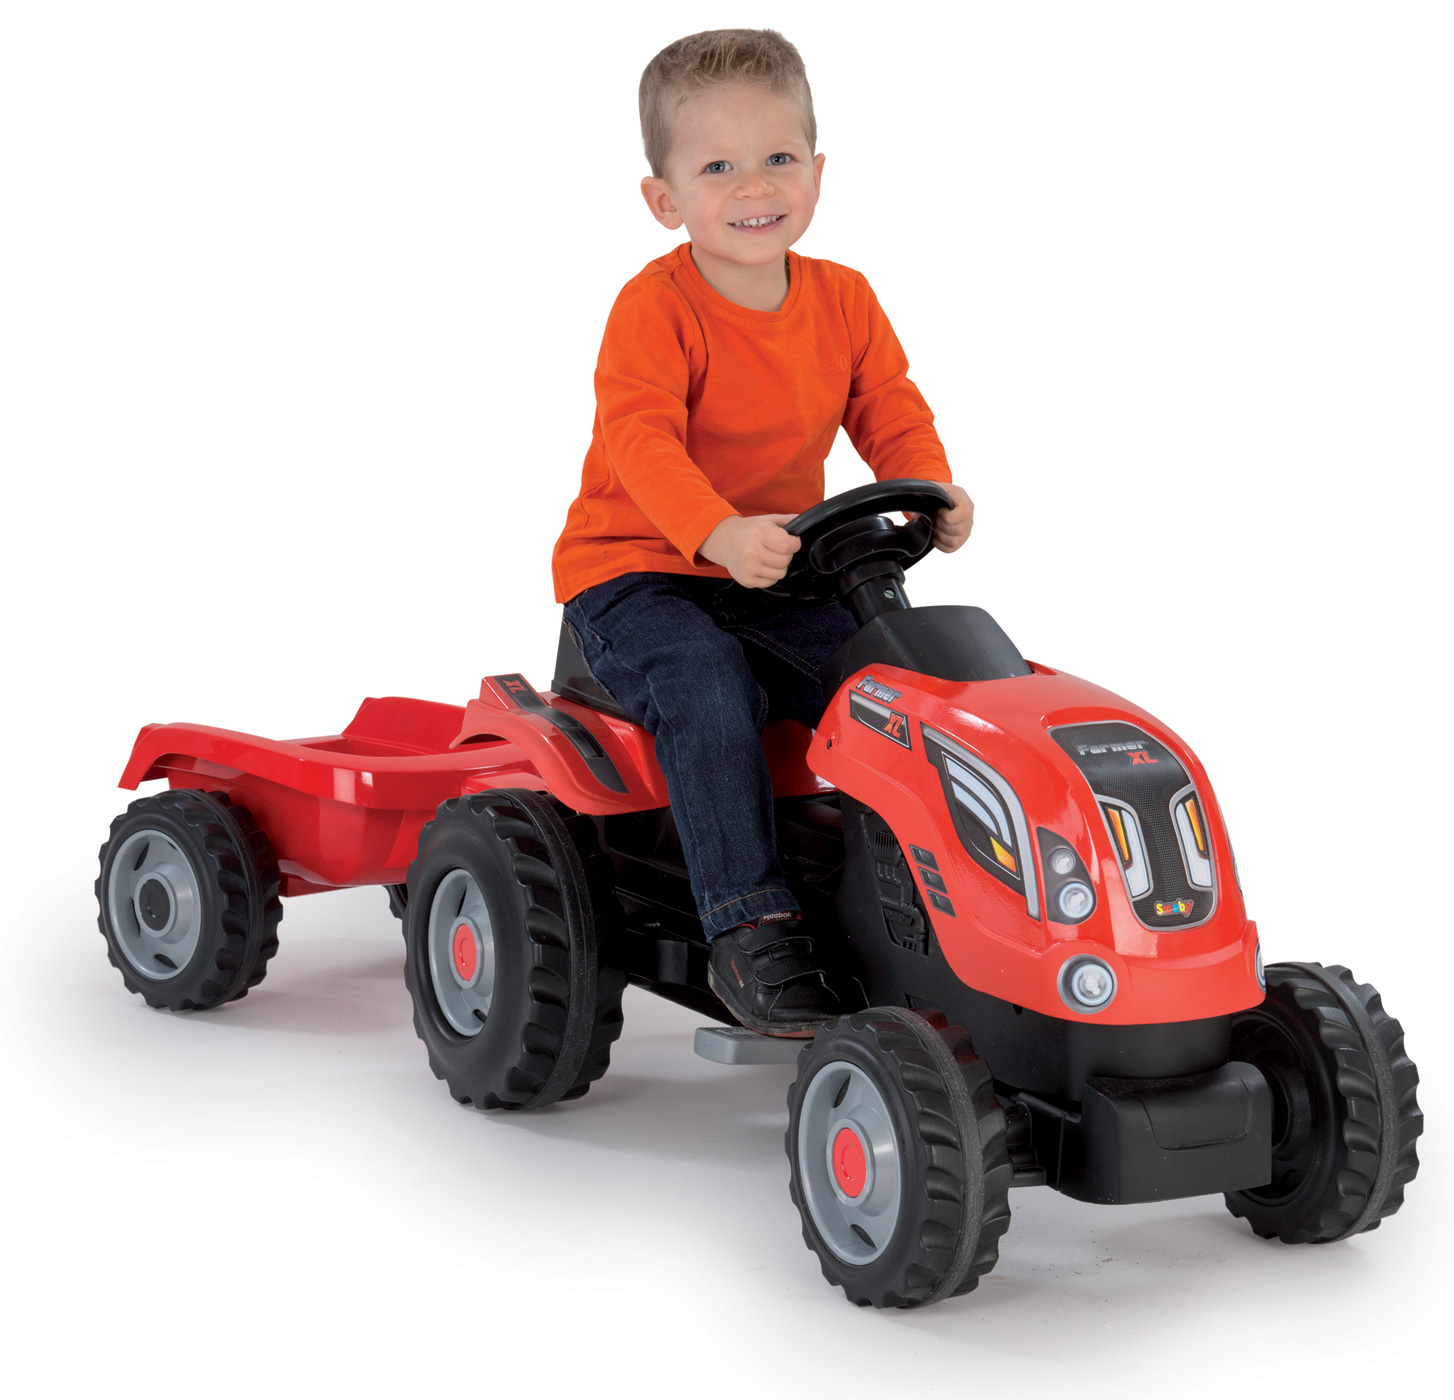 Smoby detský traktor Farmer XL recenzia